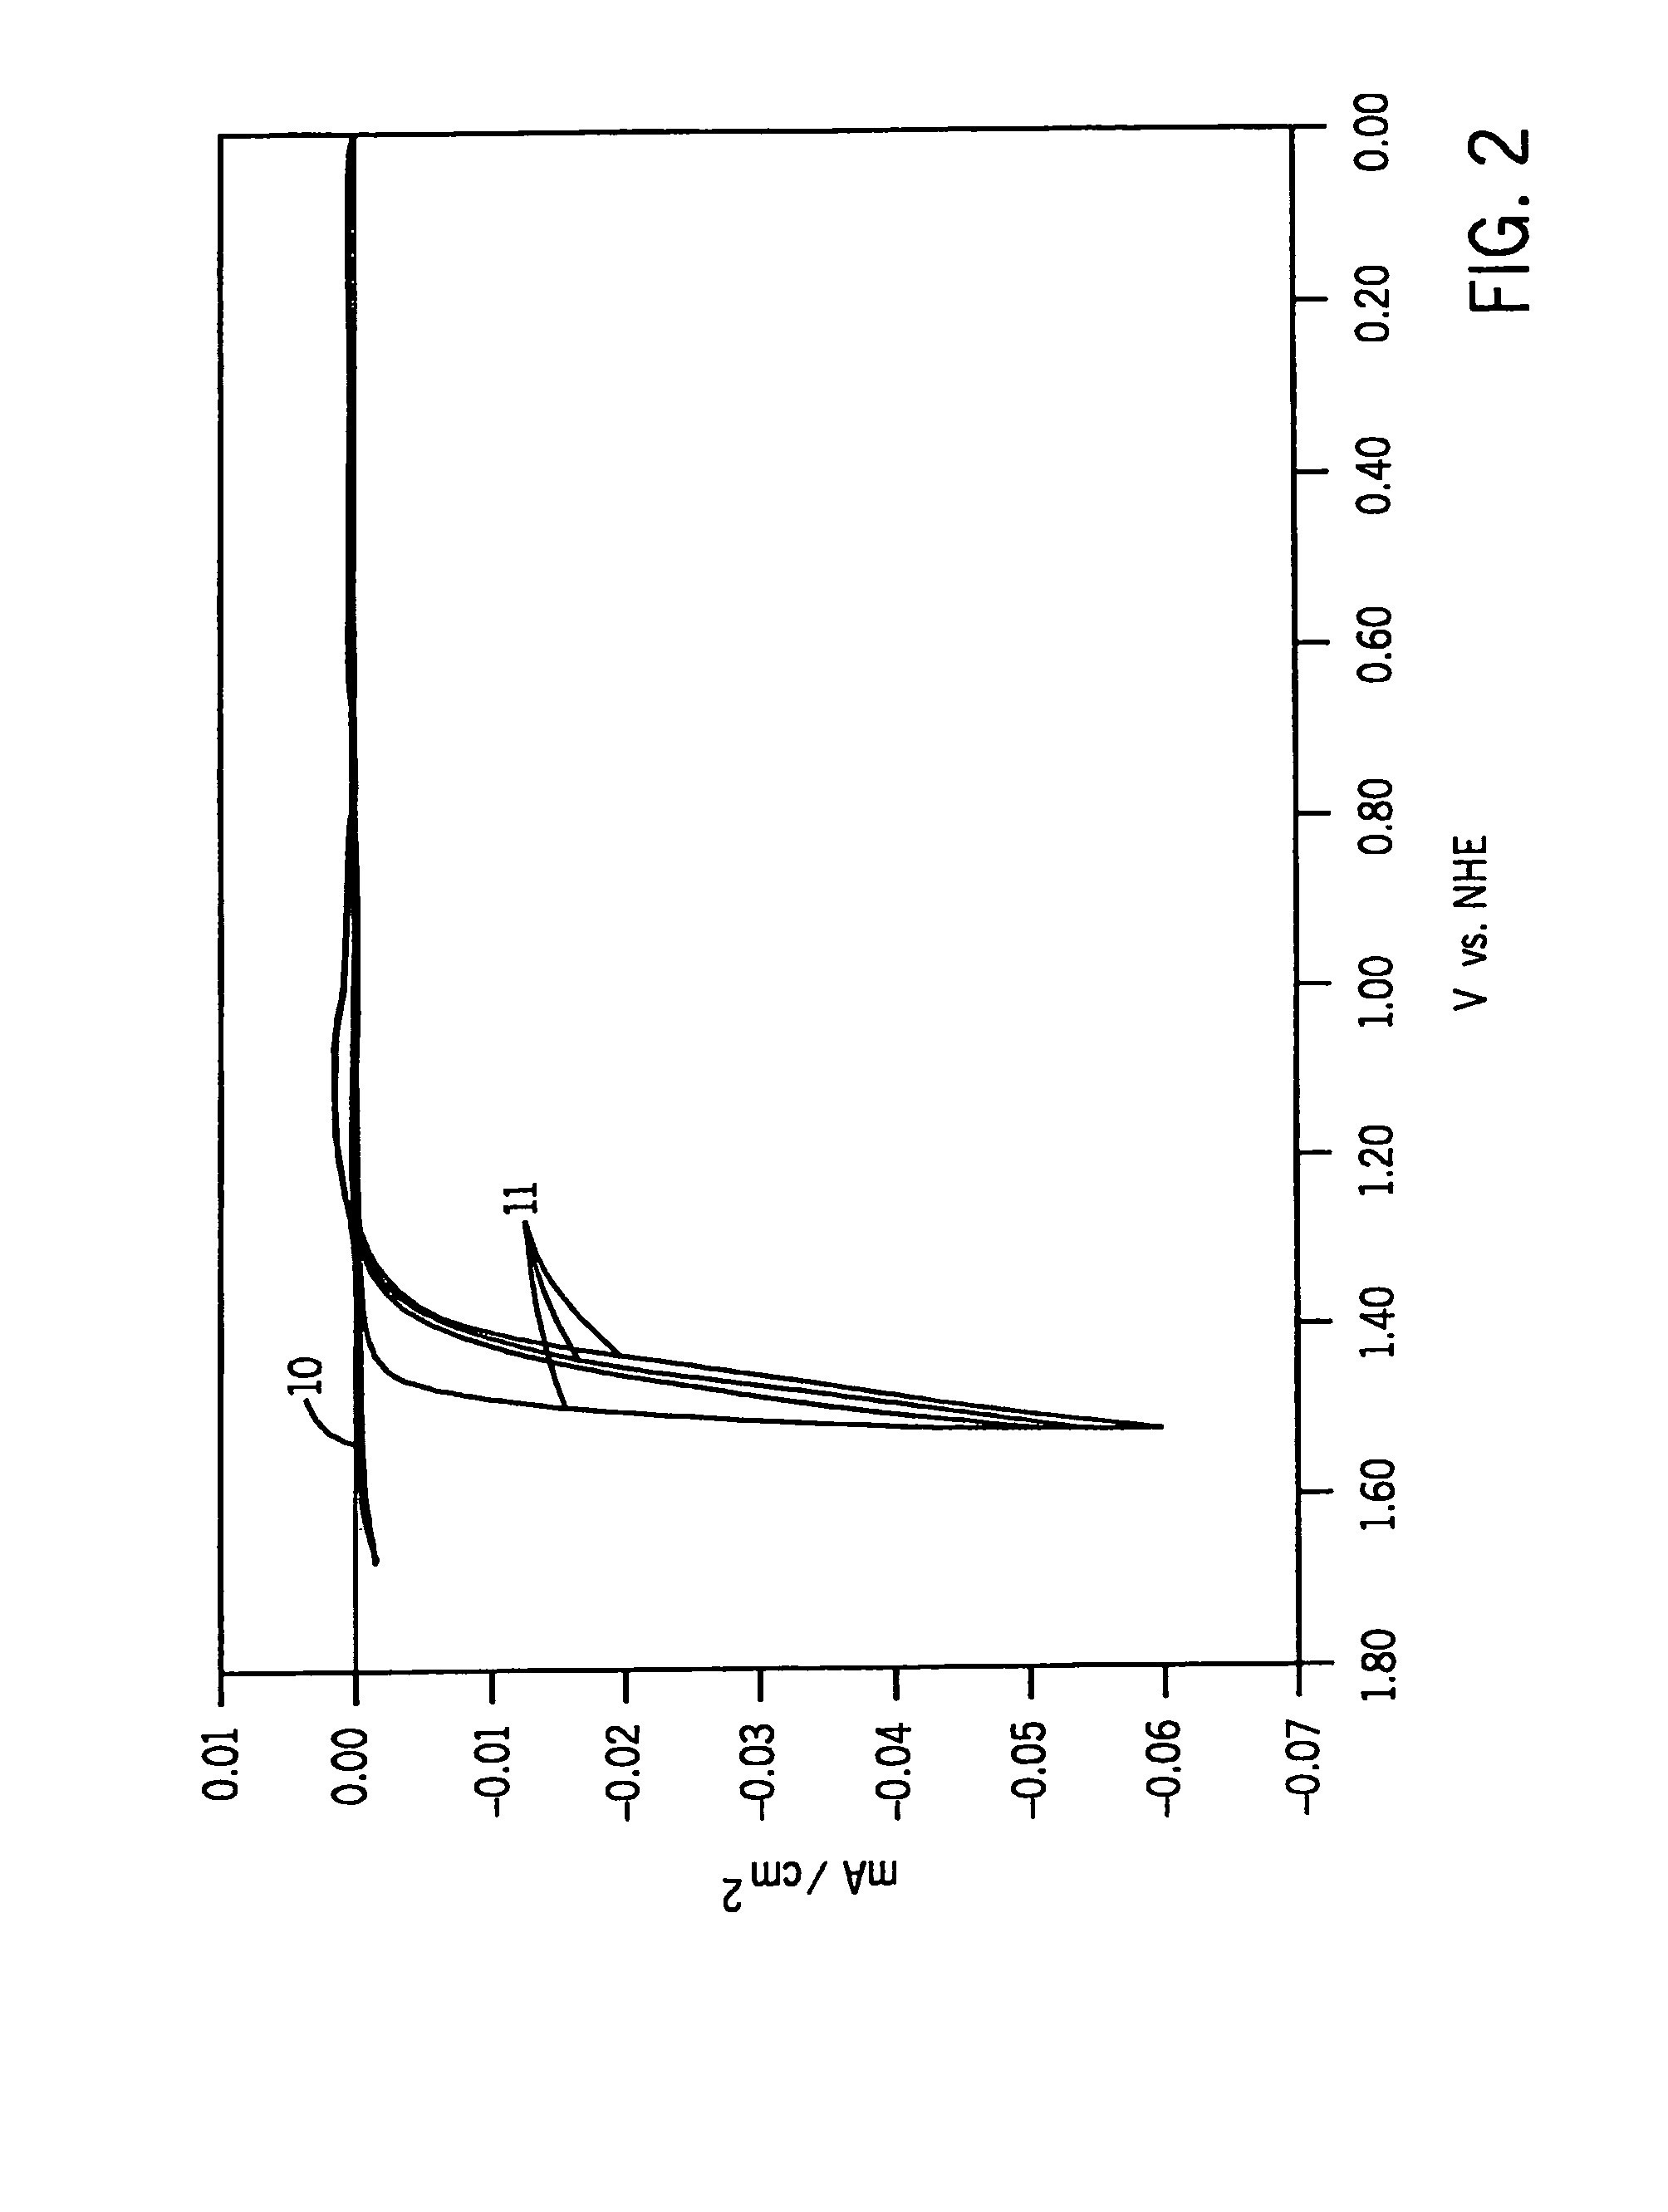 Buffered cobalt oxide catalysts